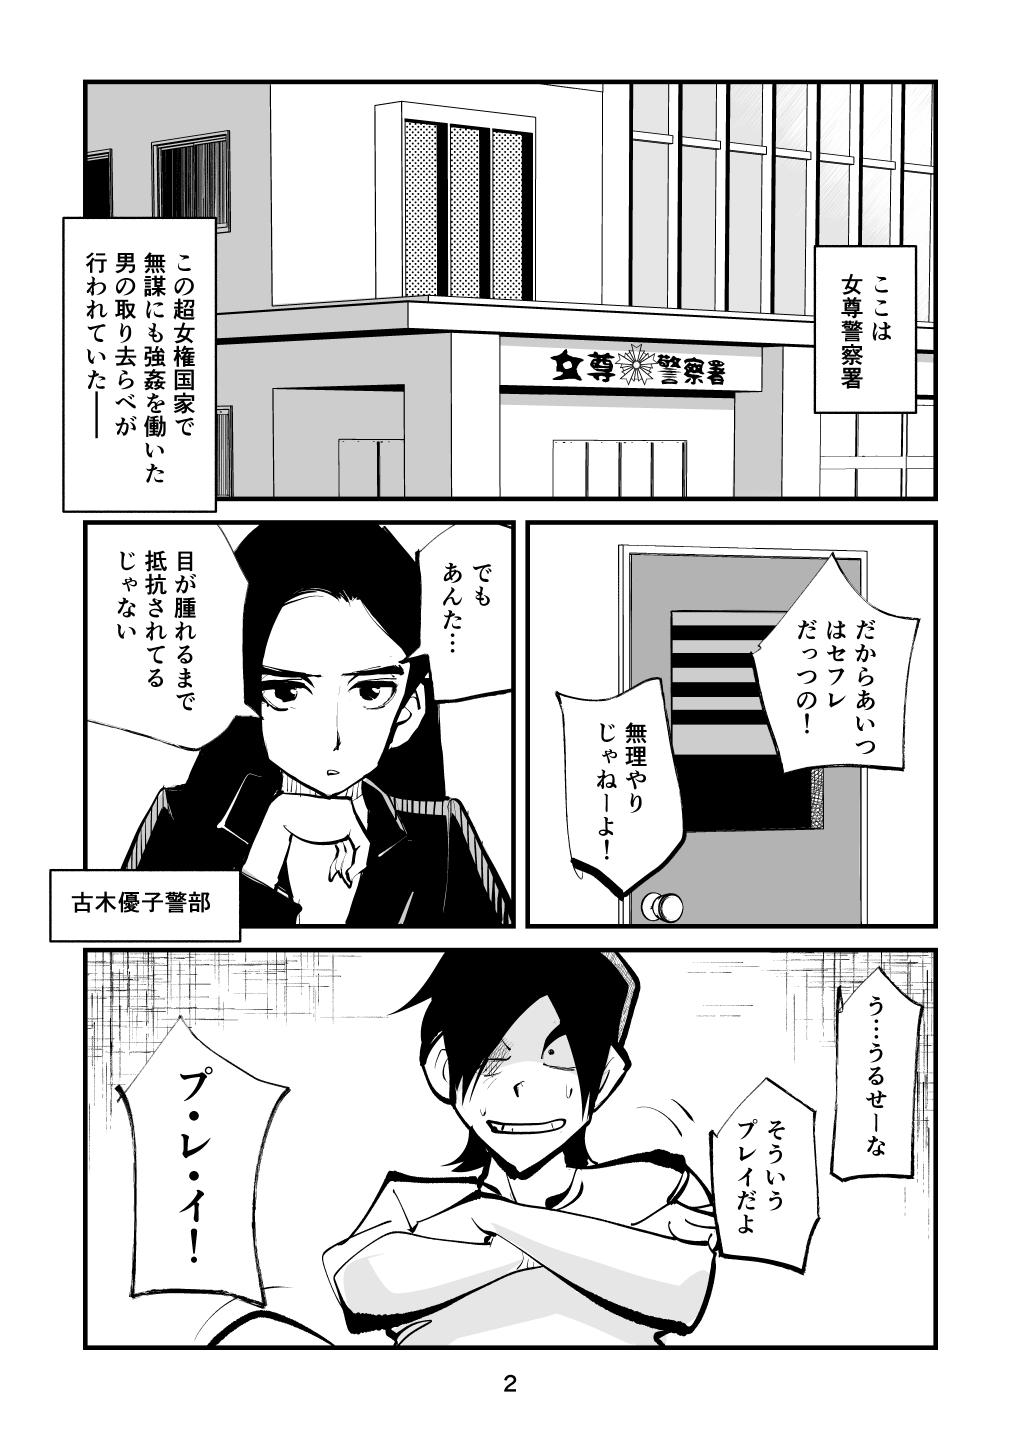 19yo Naburi Torishirabeshitsu Abuse - Page 2